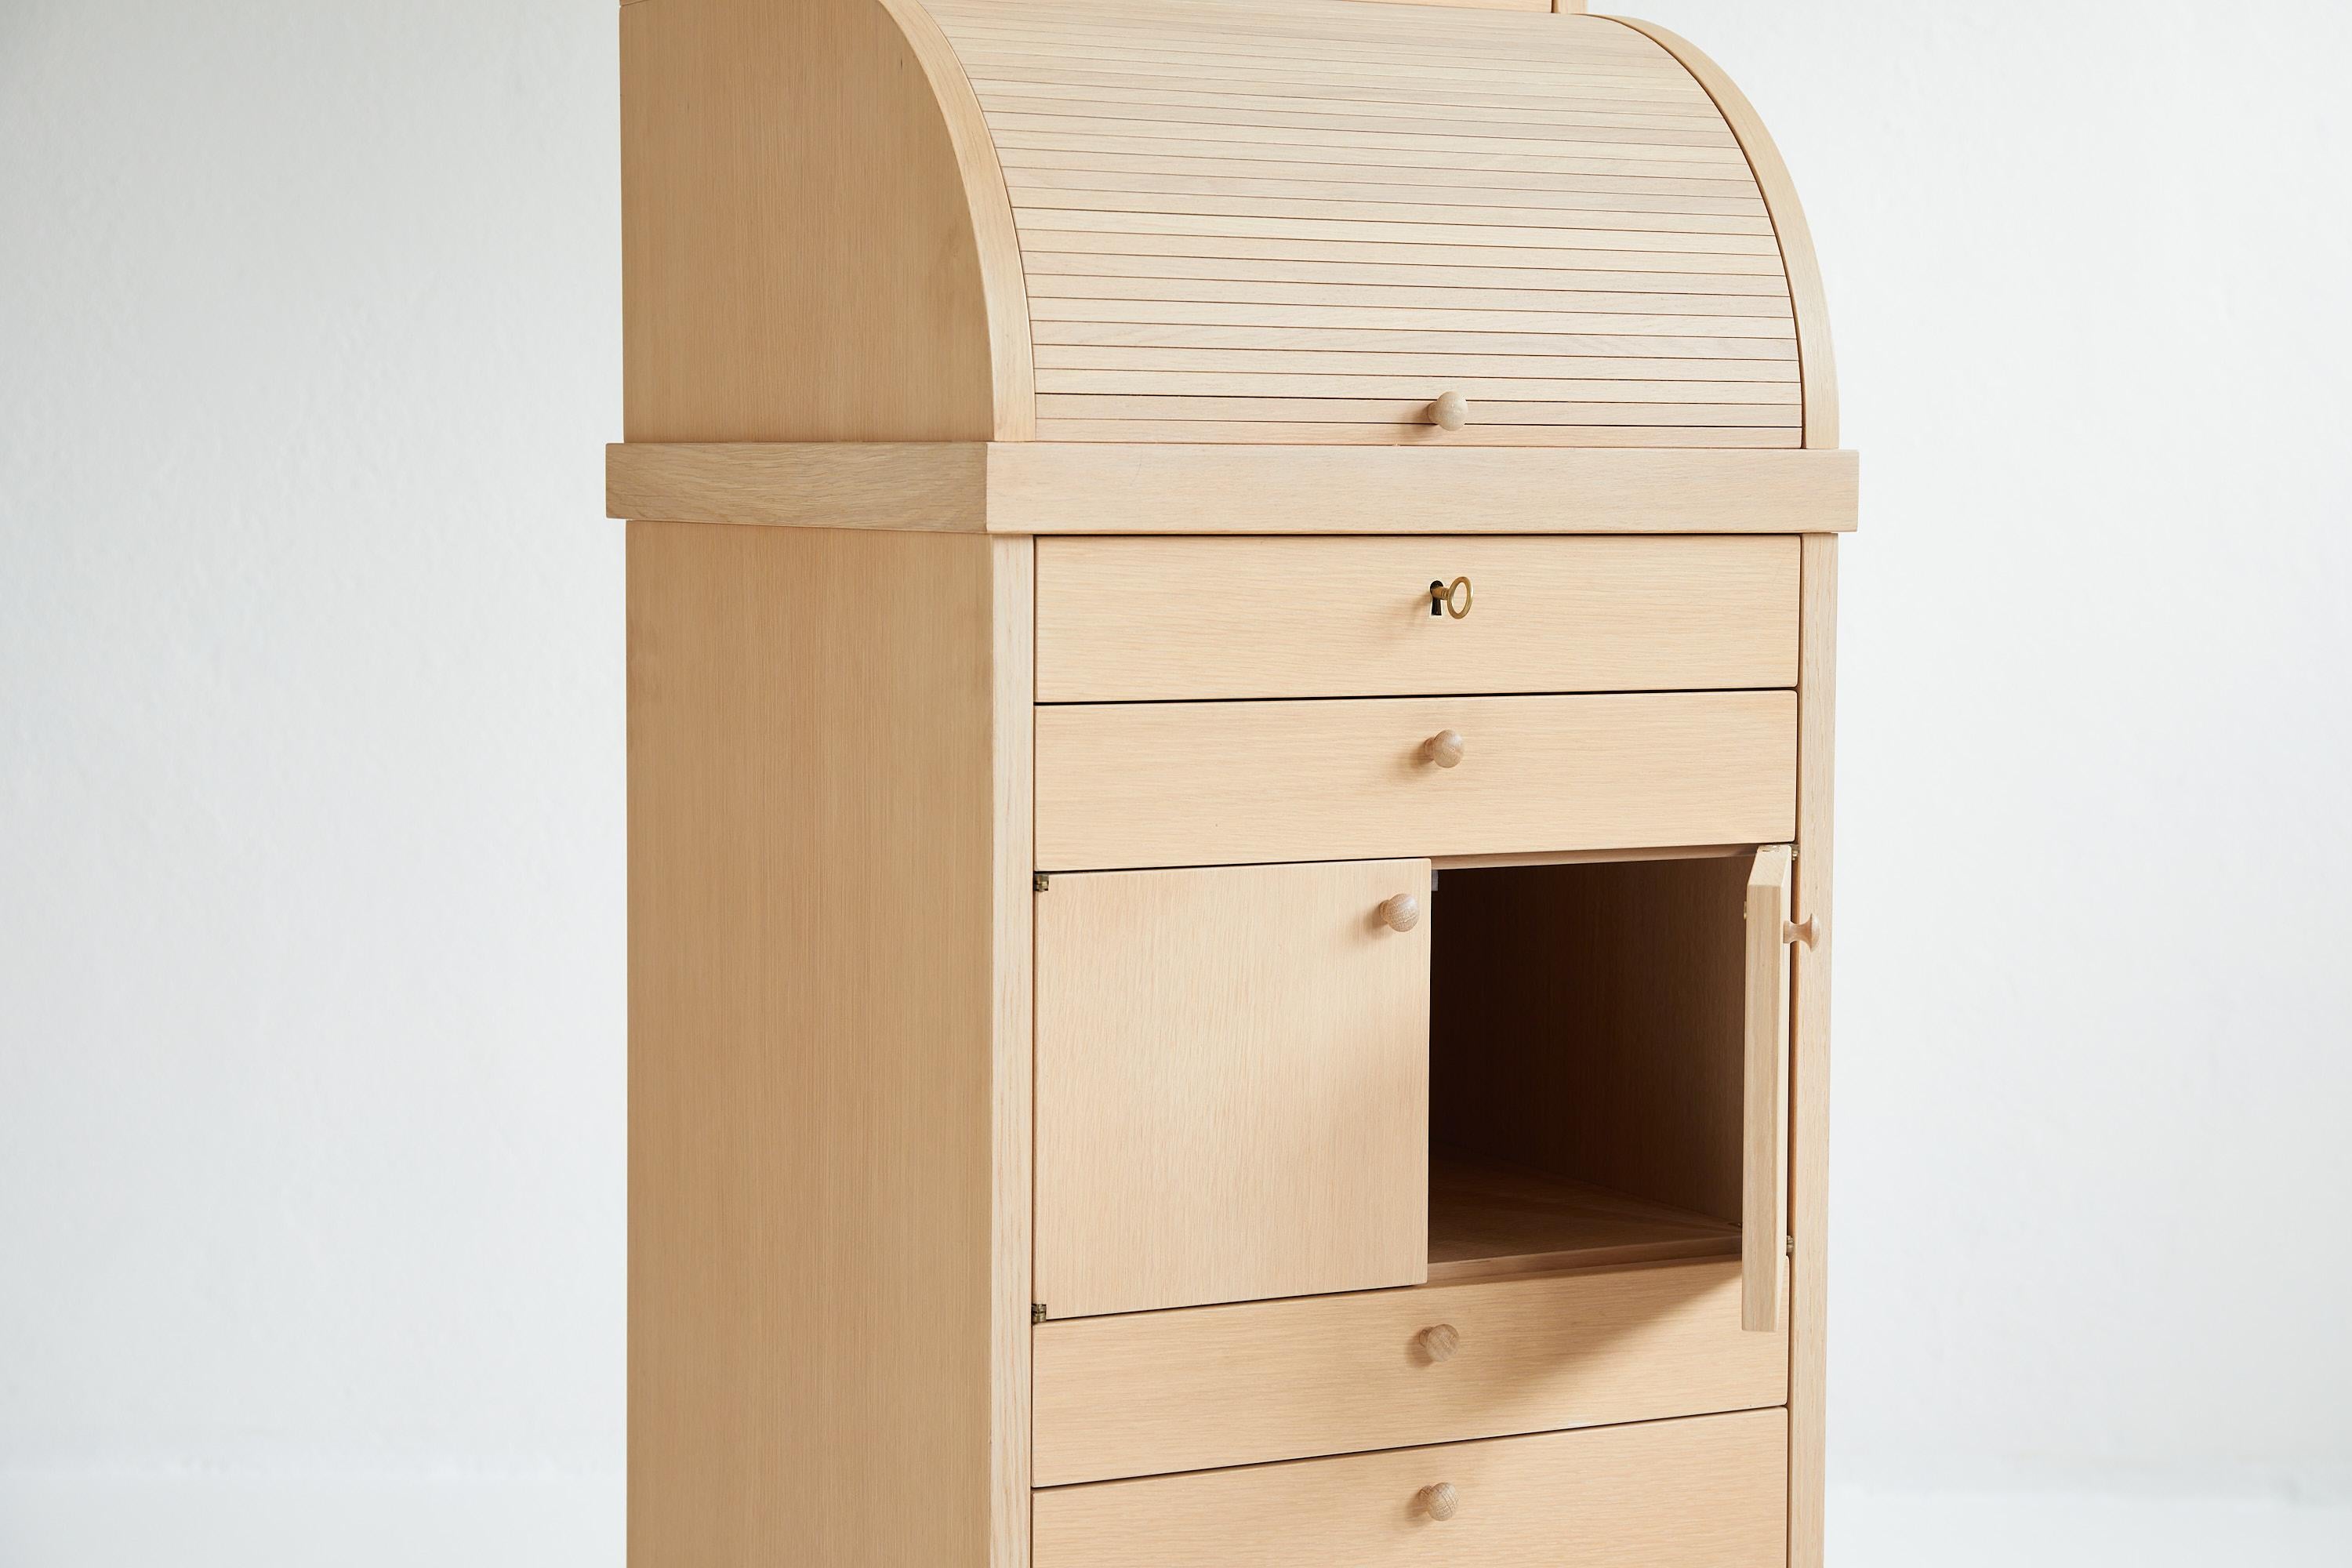 Italian Carteggio Wood Drawer Cabinet by Aldo Rossi for Molteni Italy, 1987